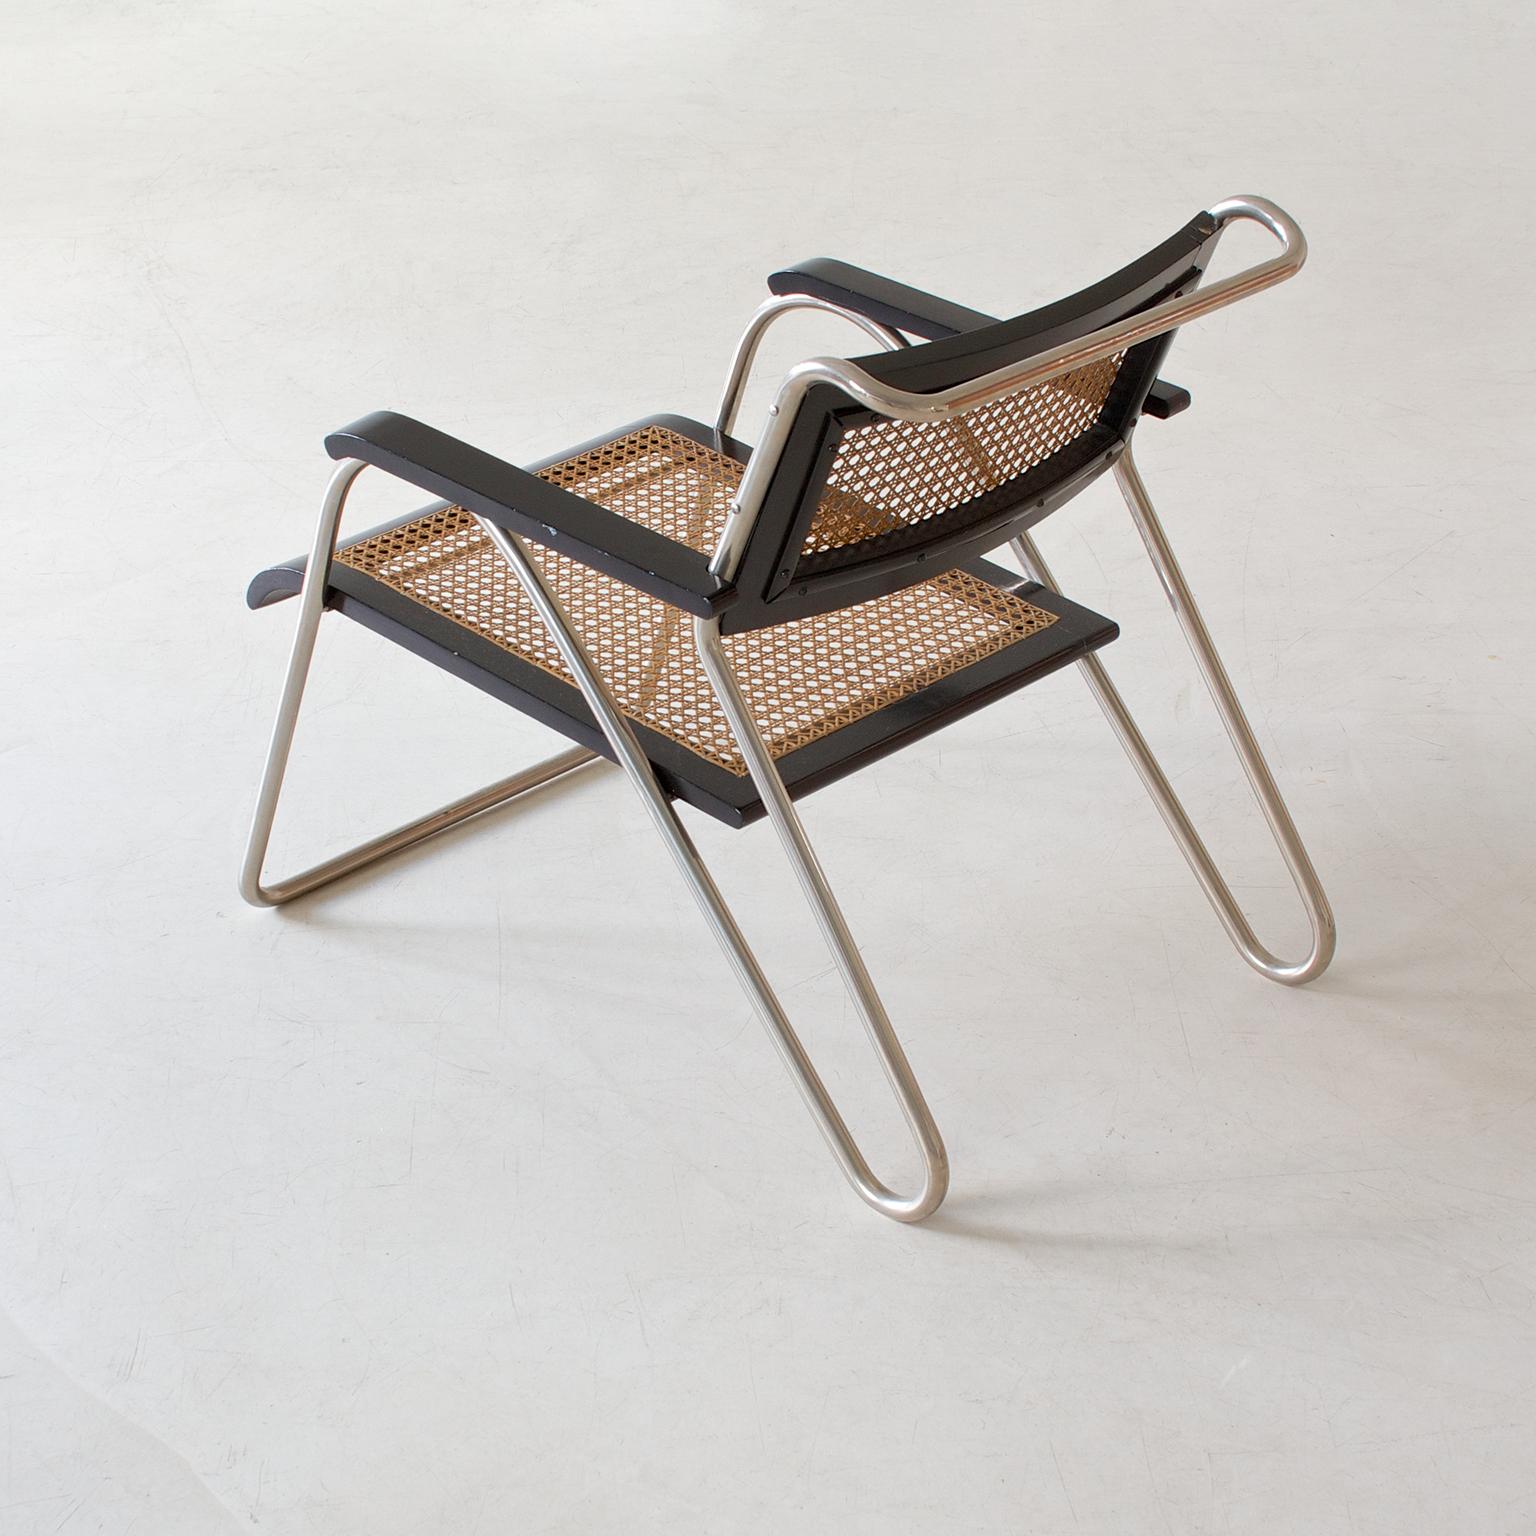 Bauhaus-Sessel aus Stahlrohr von Erich Dieckmann, schwarz lackiertes Holz, 1931 (Mitte des 20. Jahrhunderts)